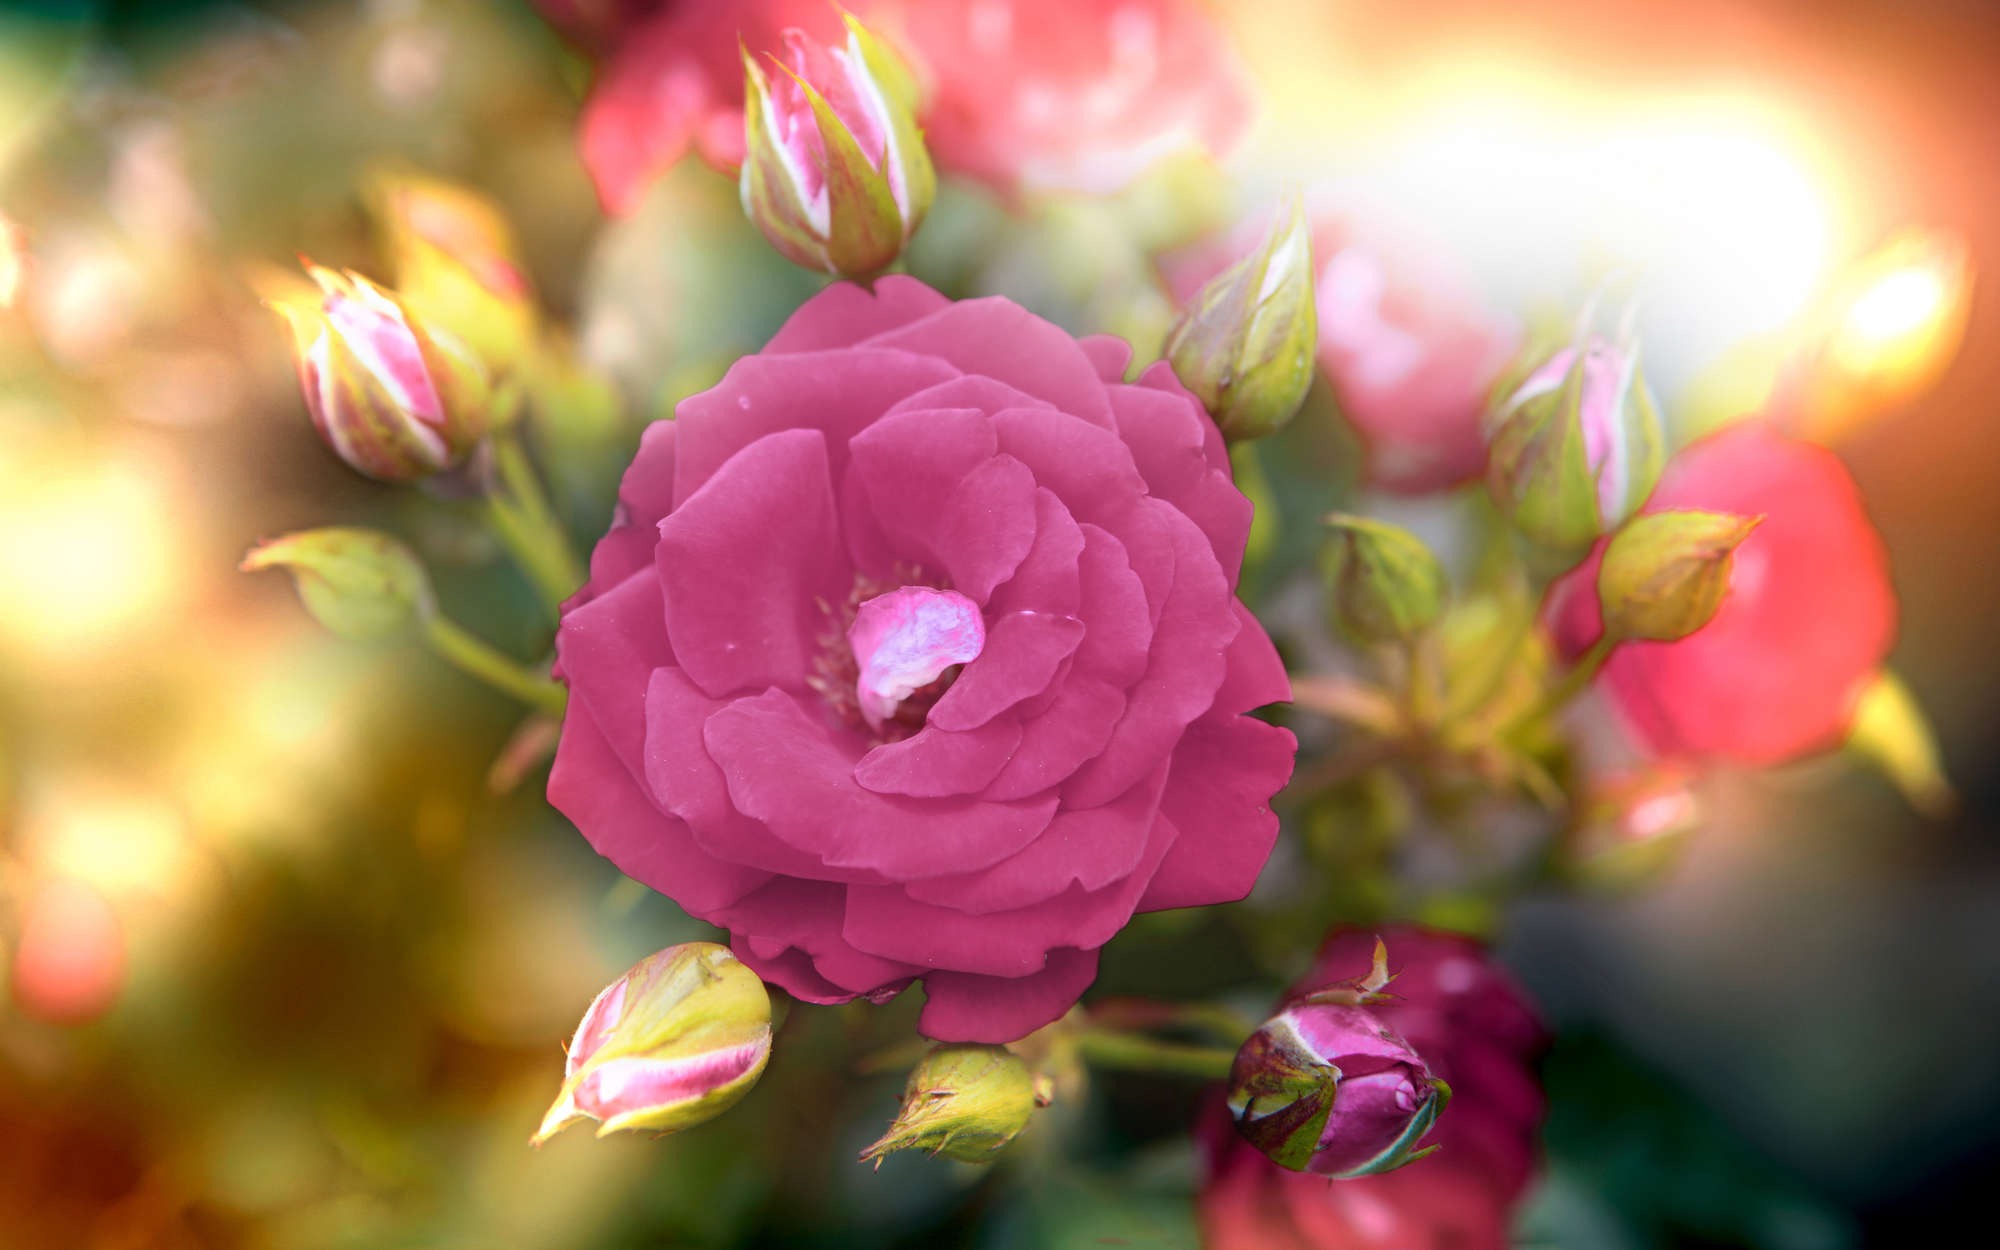             Fototapete Blume mit Blüte in pink – Premium Glattvlies
        